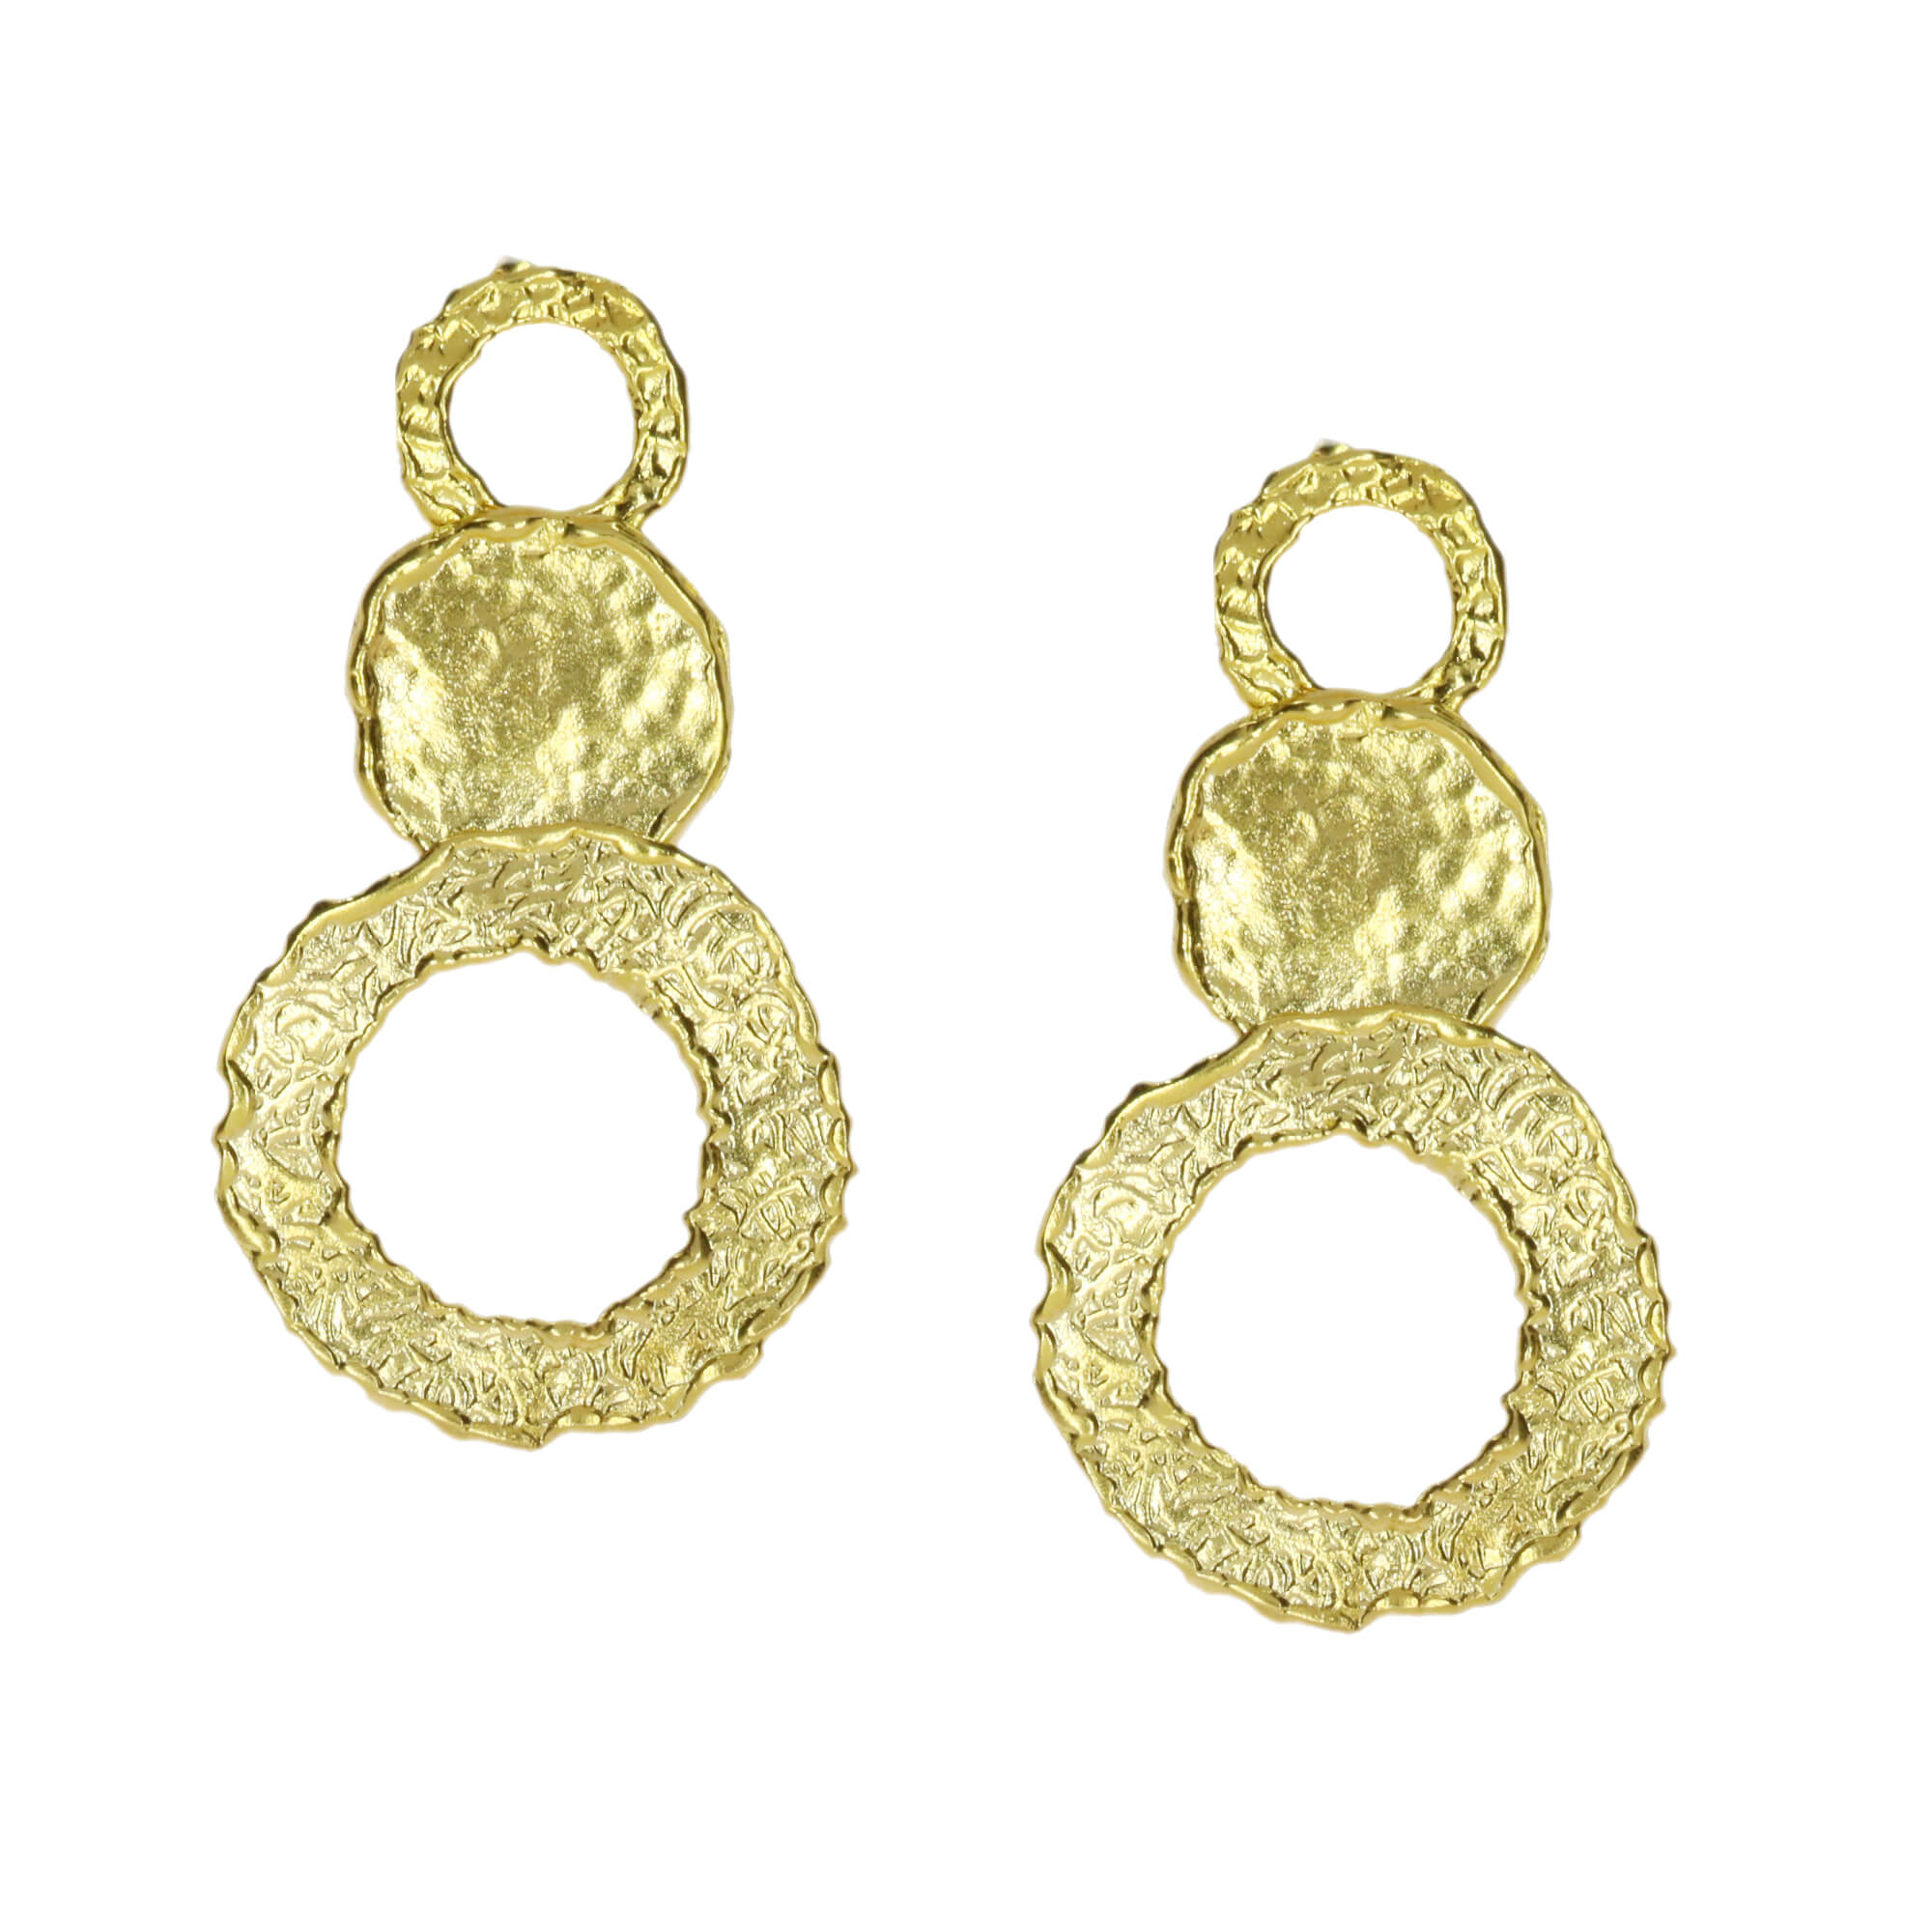 OTTOMAN DI08 Circles earrings in gold